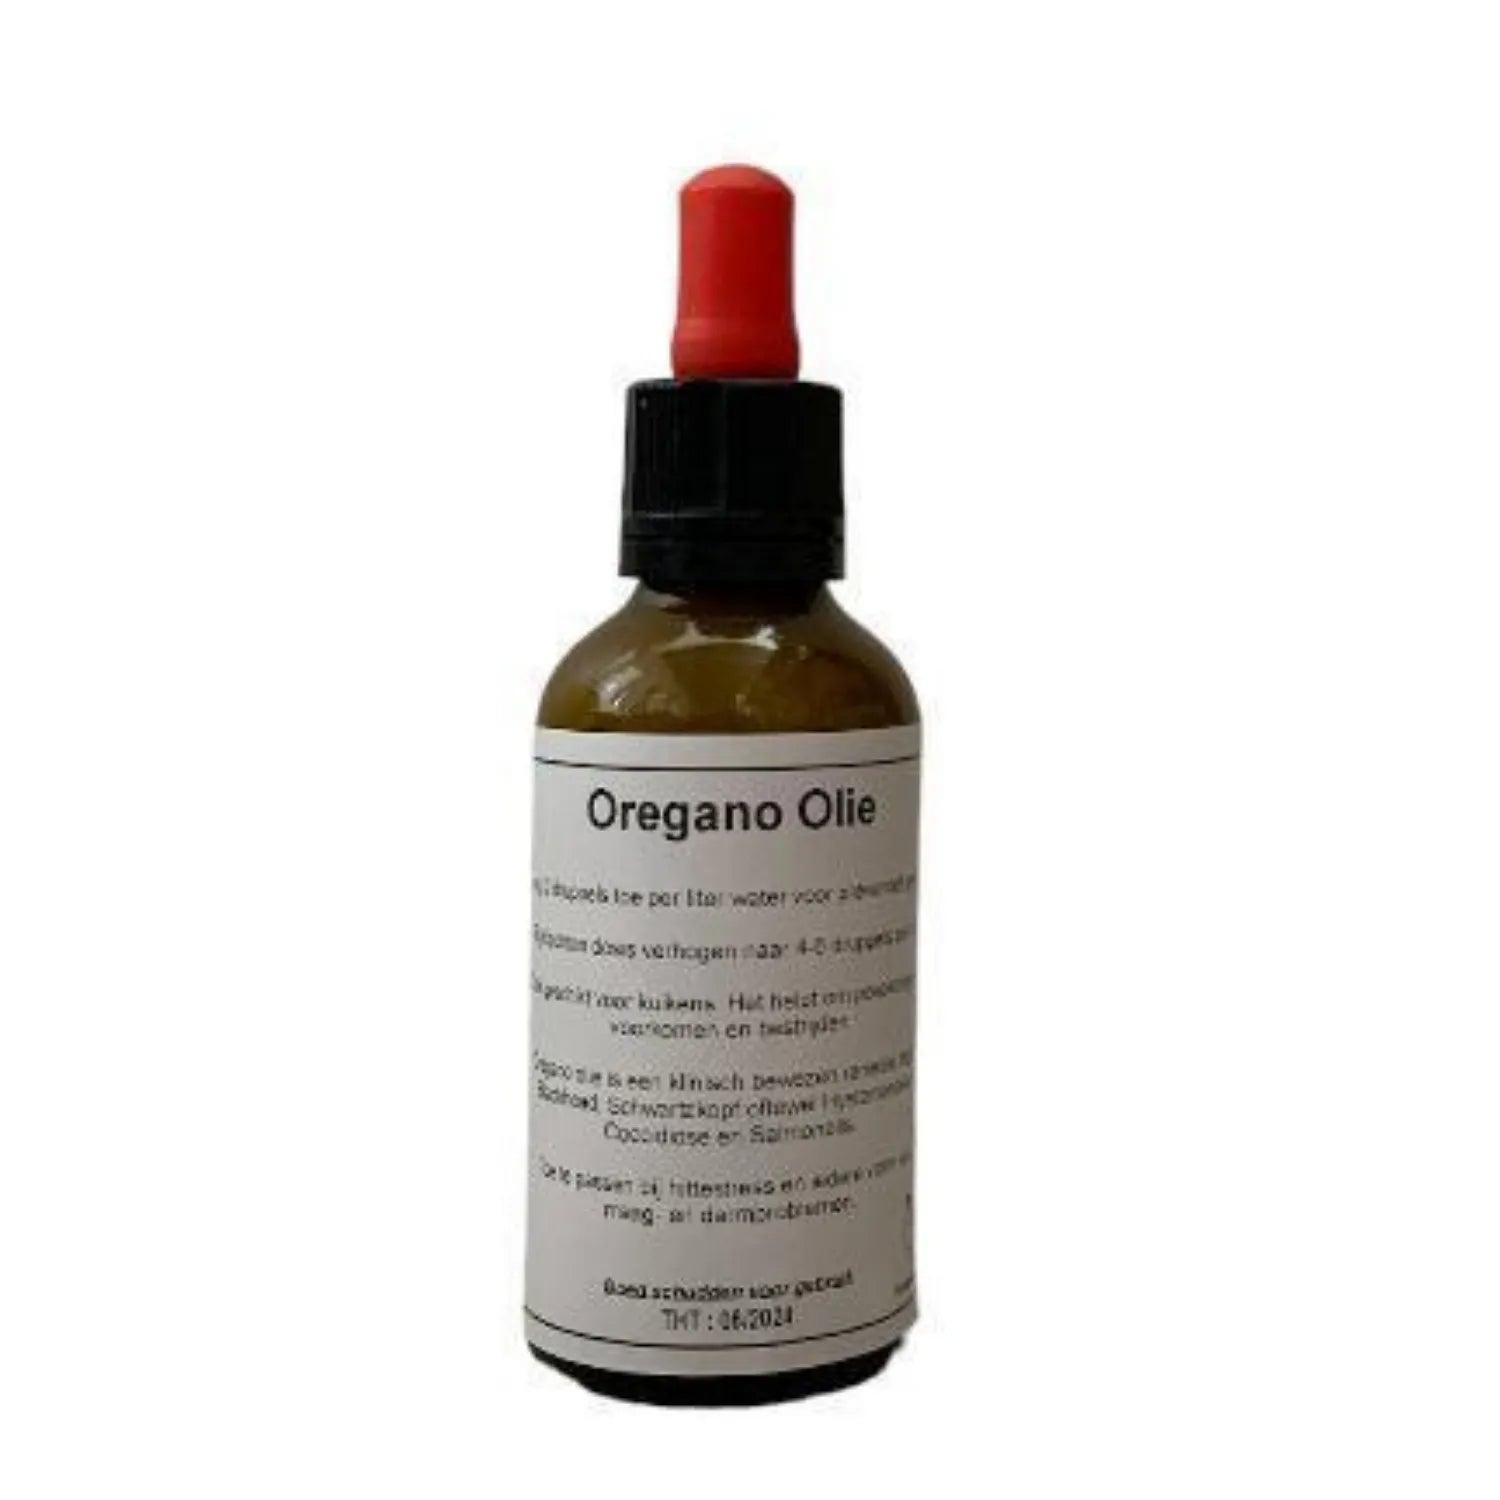 Oregano Olie , Houd drinkbakken vrij van alg en bacteriën, makkelijk te gebruiken door het drinkwater, Natuurlijk middel tegen Coccidiose en hittestress, zorgt voor een optimale darmflora en gezondheid bij kippen